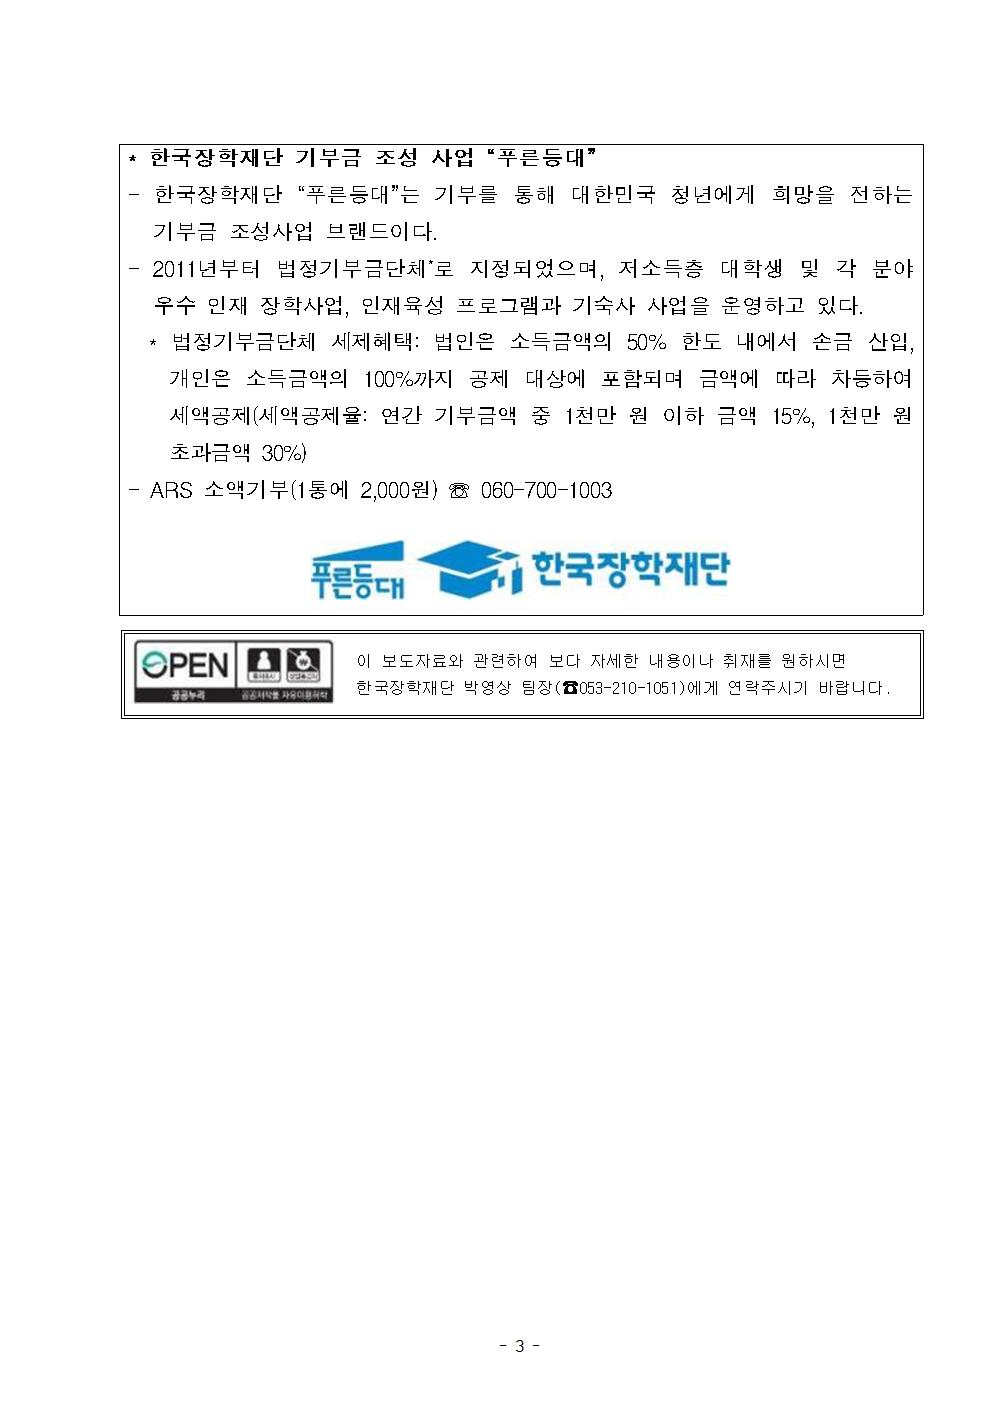 06-13(목)[보도자료] 한국장학재단 국민건강보험공단 기부장학금 기탁식003.jpg